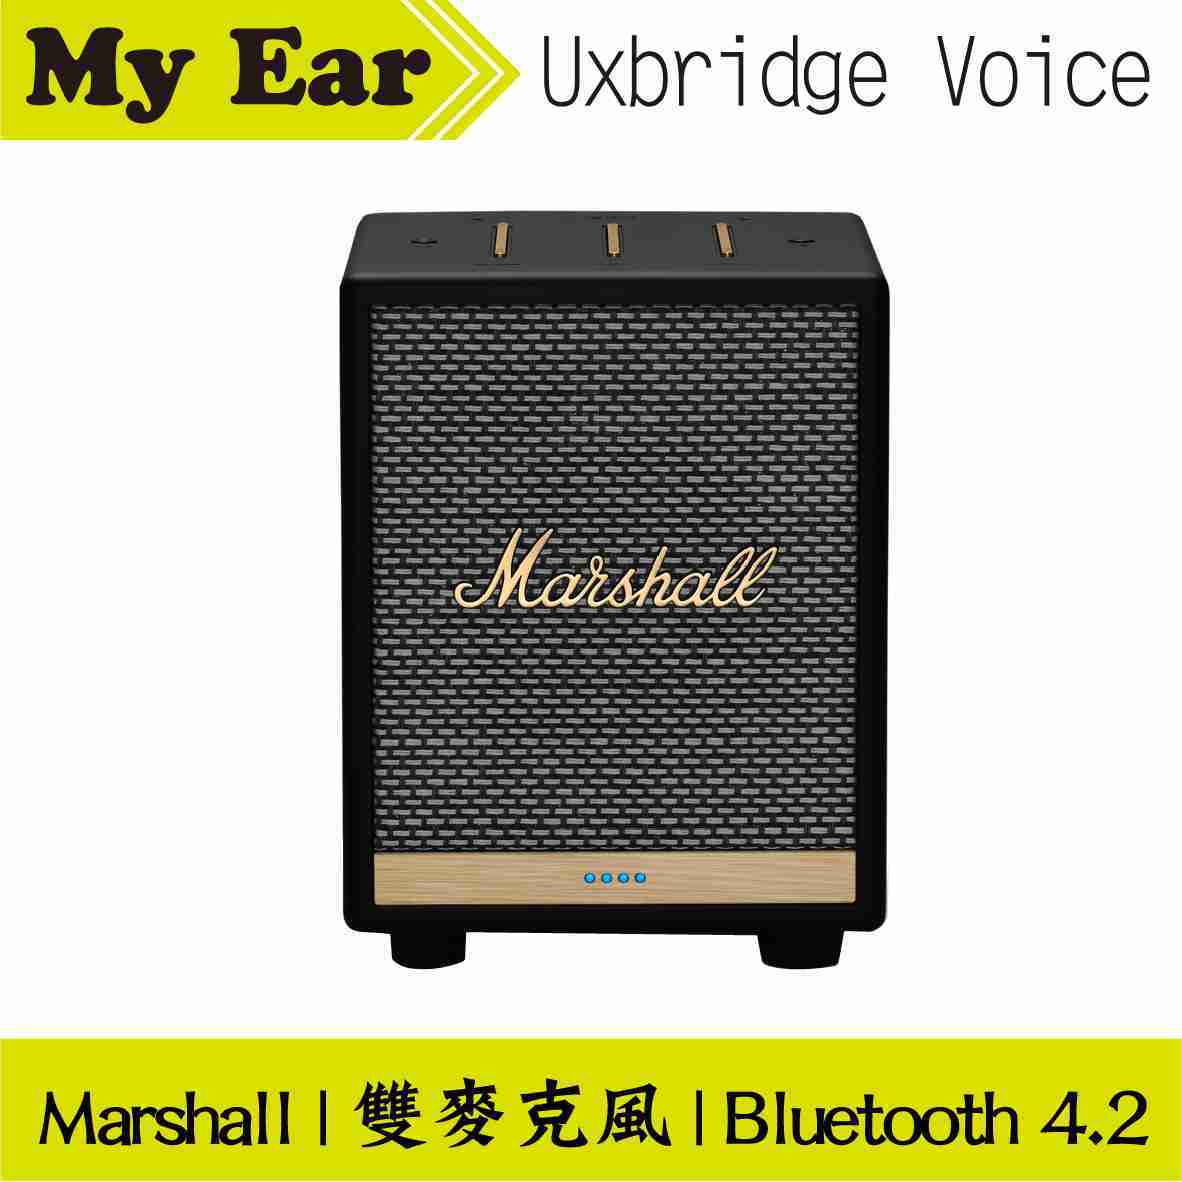 Marshall 馬歇爾 Uxbridge Voice 黑色 雙麥克風 藍芽 智慧 喇叭 | My Ear 耳機專門店